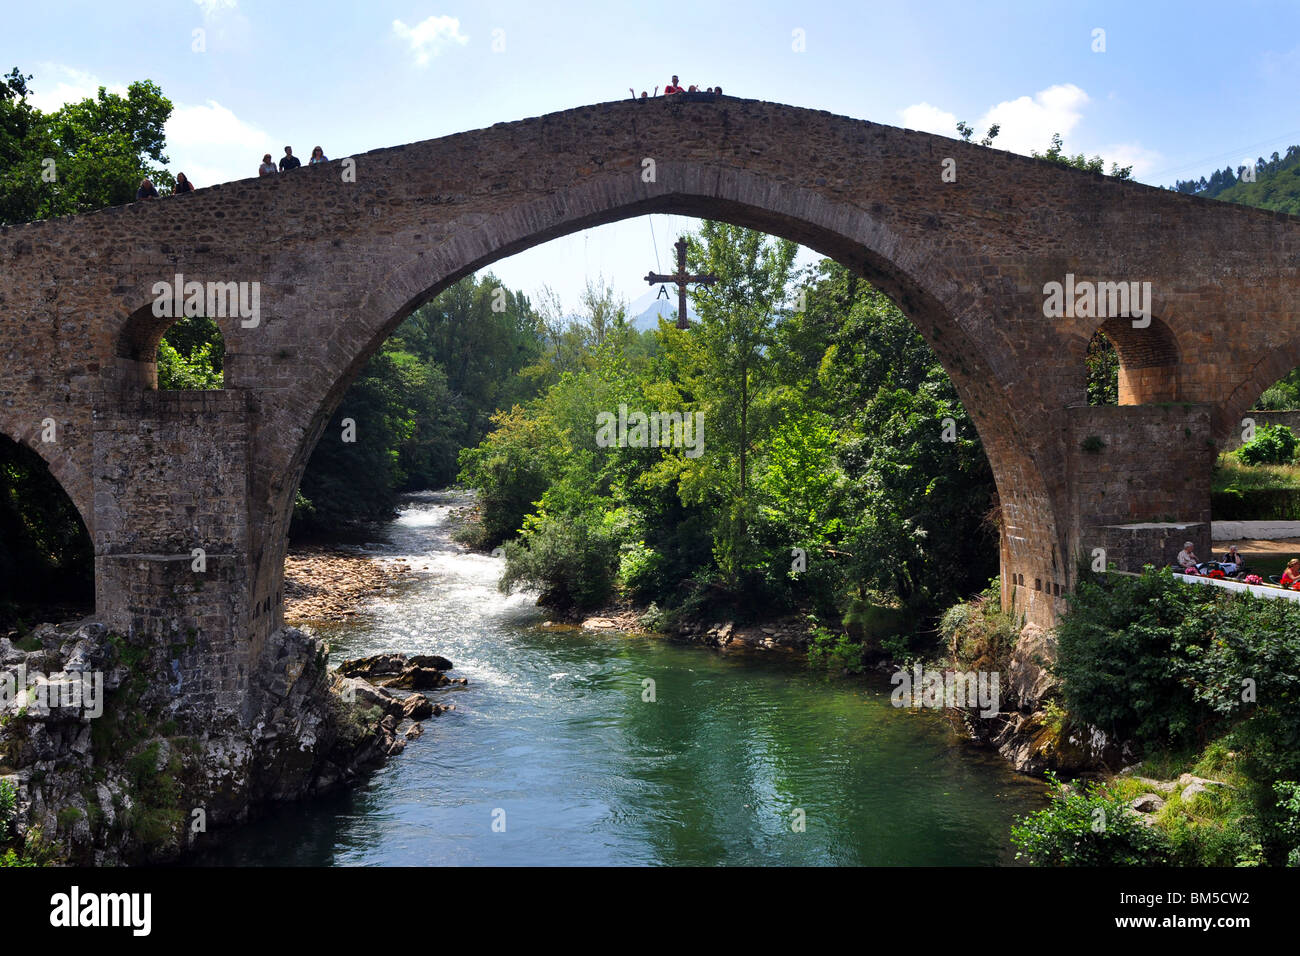 Puente de piedra medieval sobre el río Sella, Cangas de Onis, Asturias, Norte de España Foto de stock